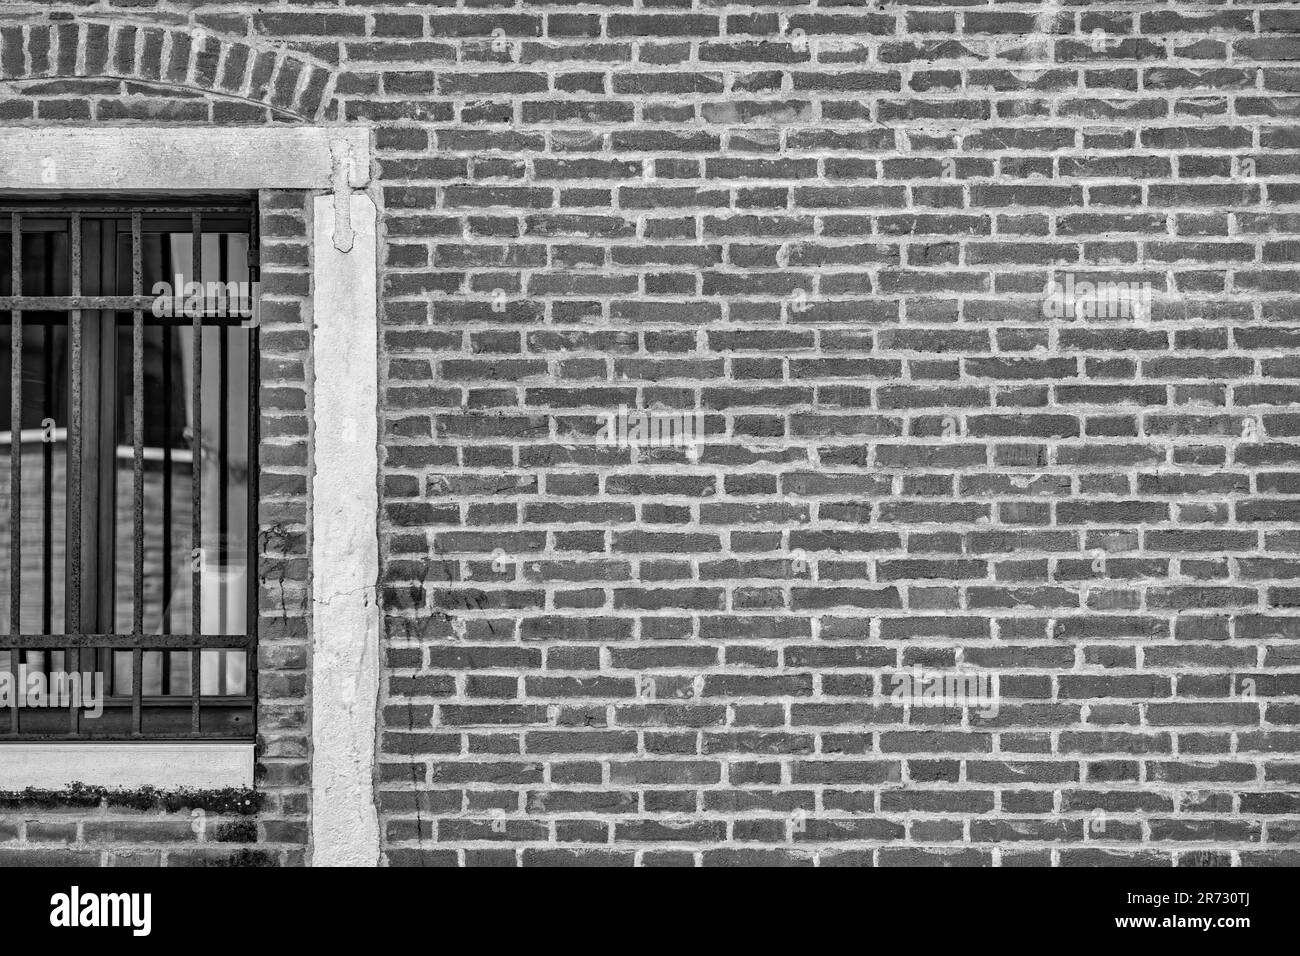 Gros plan avec une ancienne fenêtre vénitienne à l'architecture médiévale. Photographie en noir et blanc. Banque D'Images